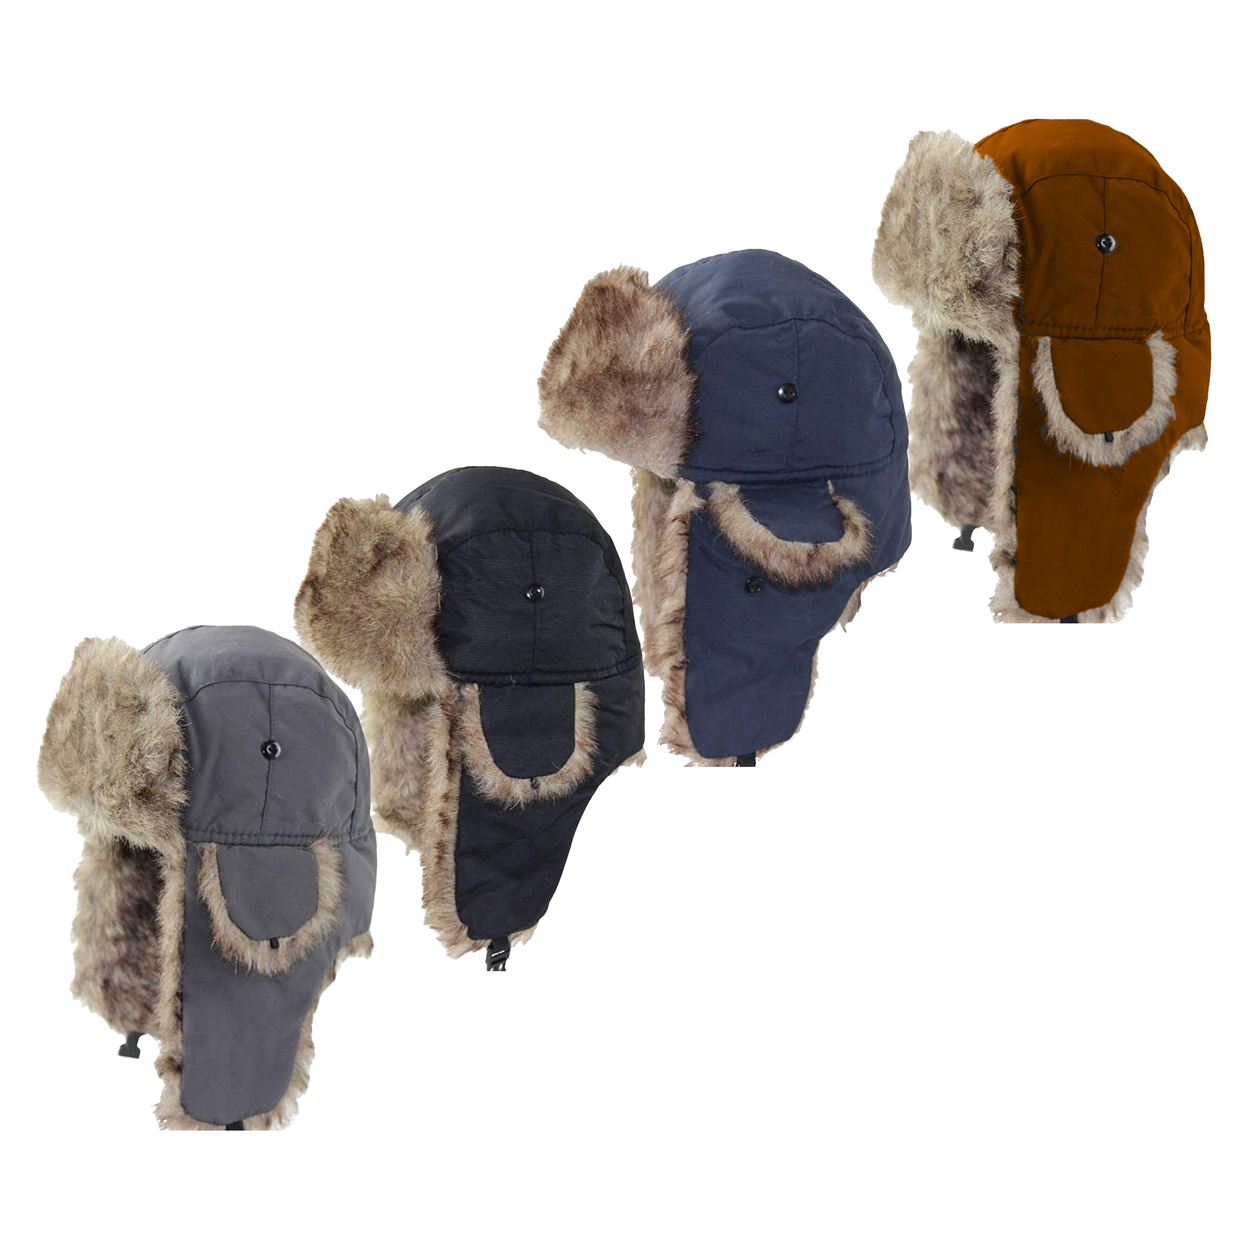 Men's Winter Warm Soft Cozy Russian Ushanka Faux Fur Hat With Ear-Flaps - Black